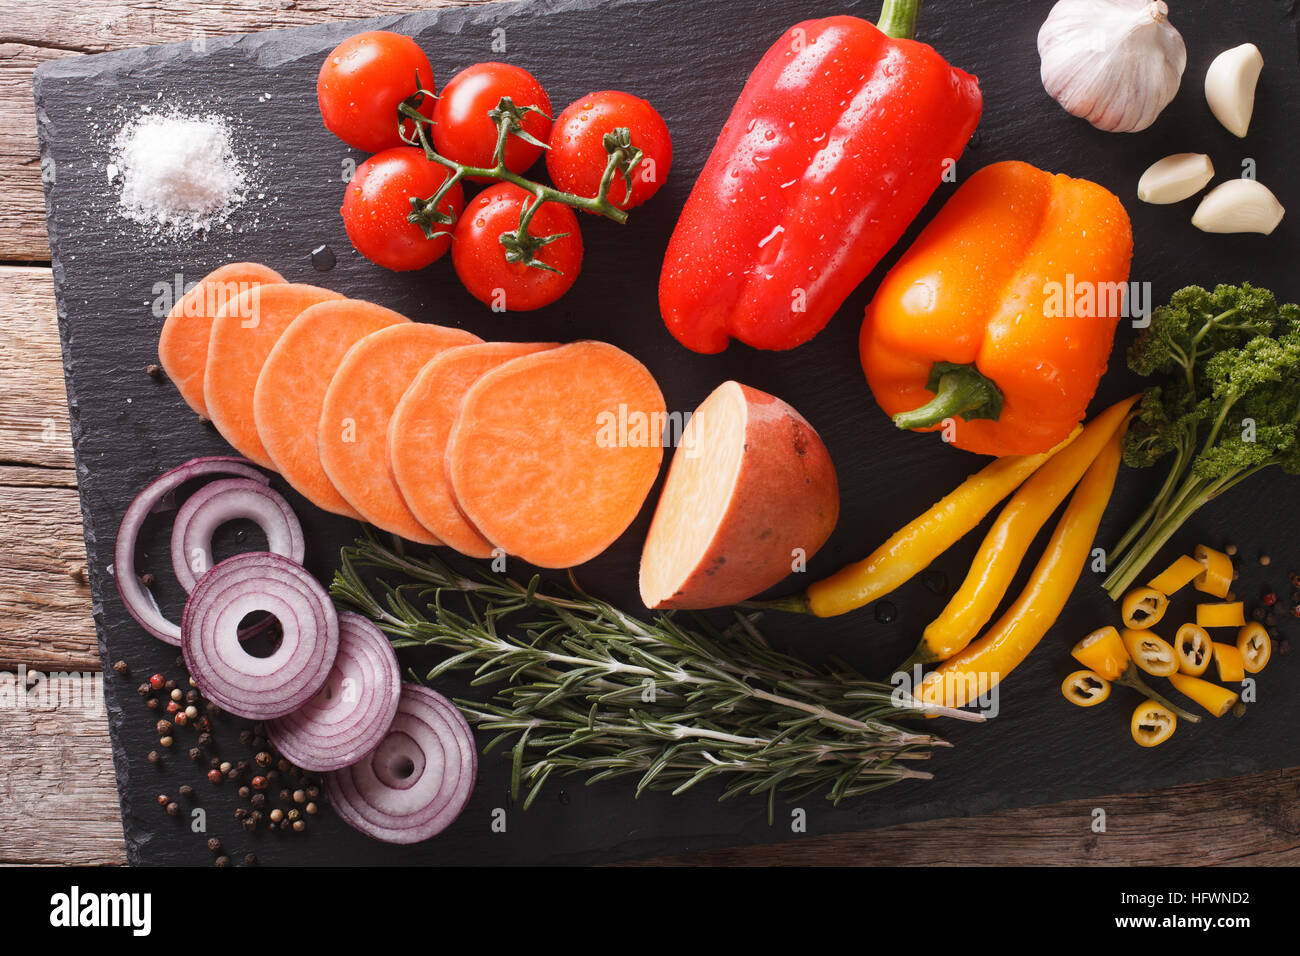 Pflanzliche Inhaltsstoffe: Süßkartoffeln, Paprika, Tomaten, Zwiebeln,  Knoblauch, Rosmarin und Gewürze Nahaufnahme auf einer Schiefertafel Tafel.  horizontale Ansicht von oben Stockfotografie - Alamy